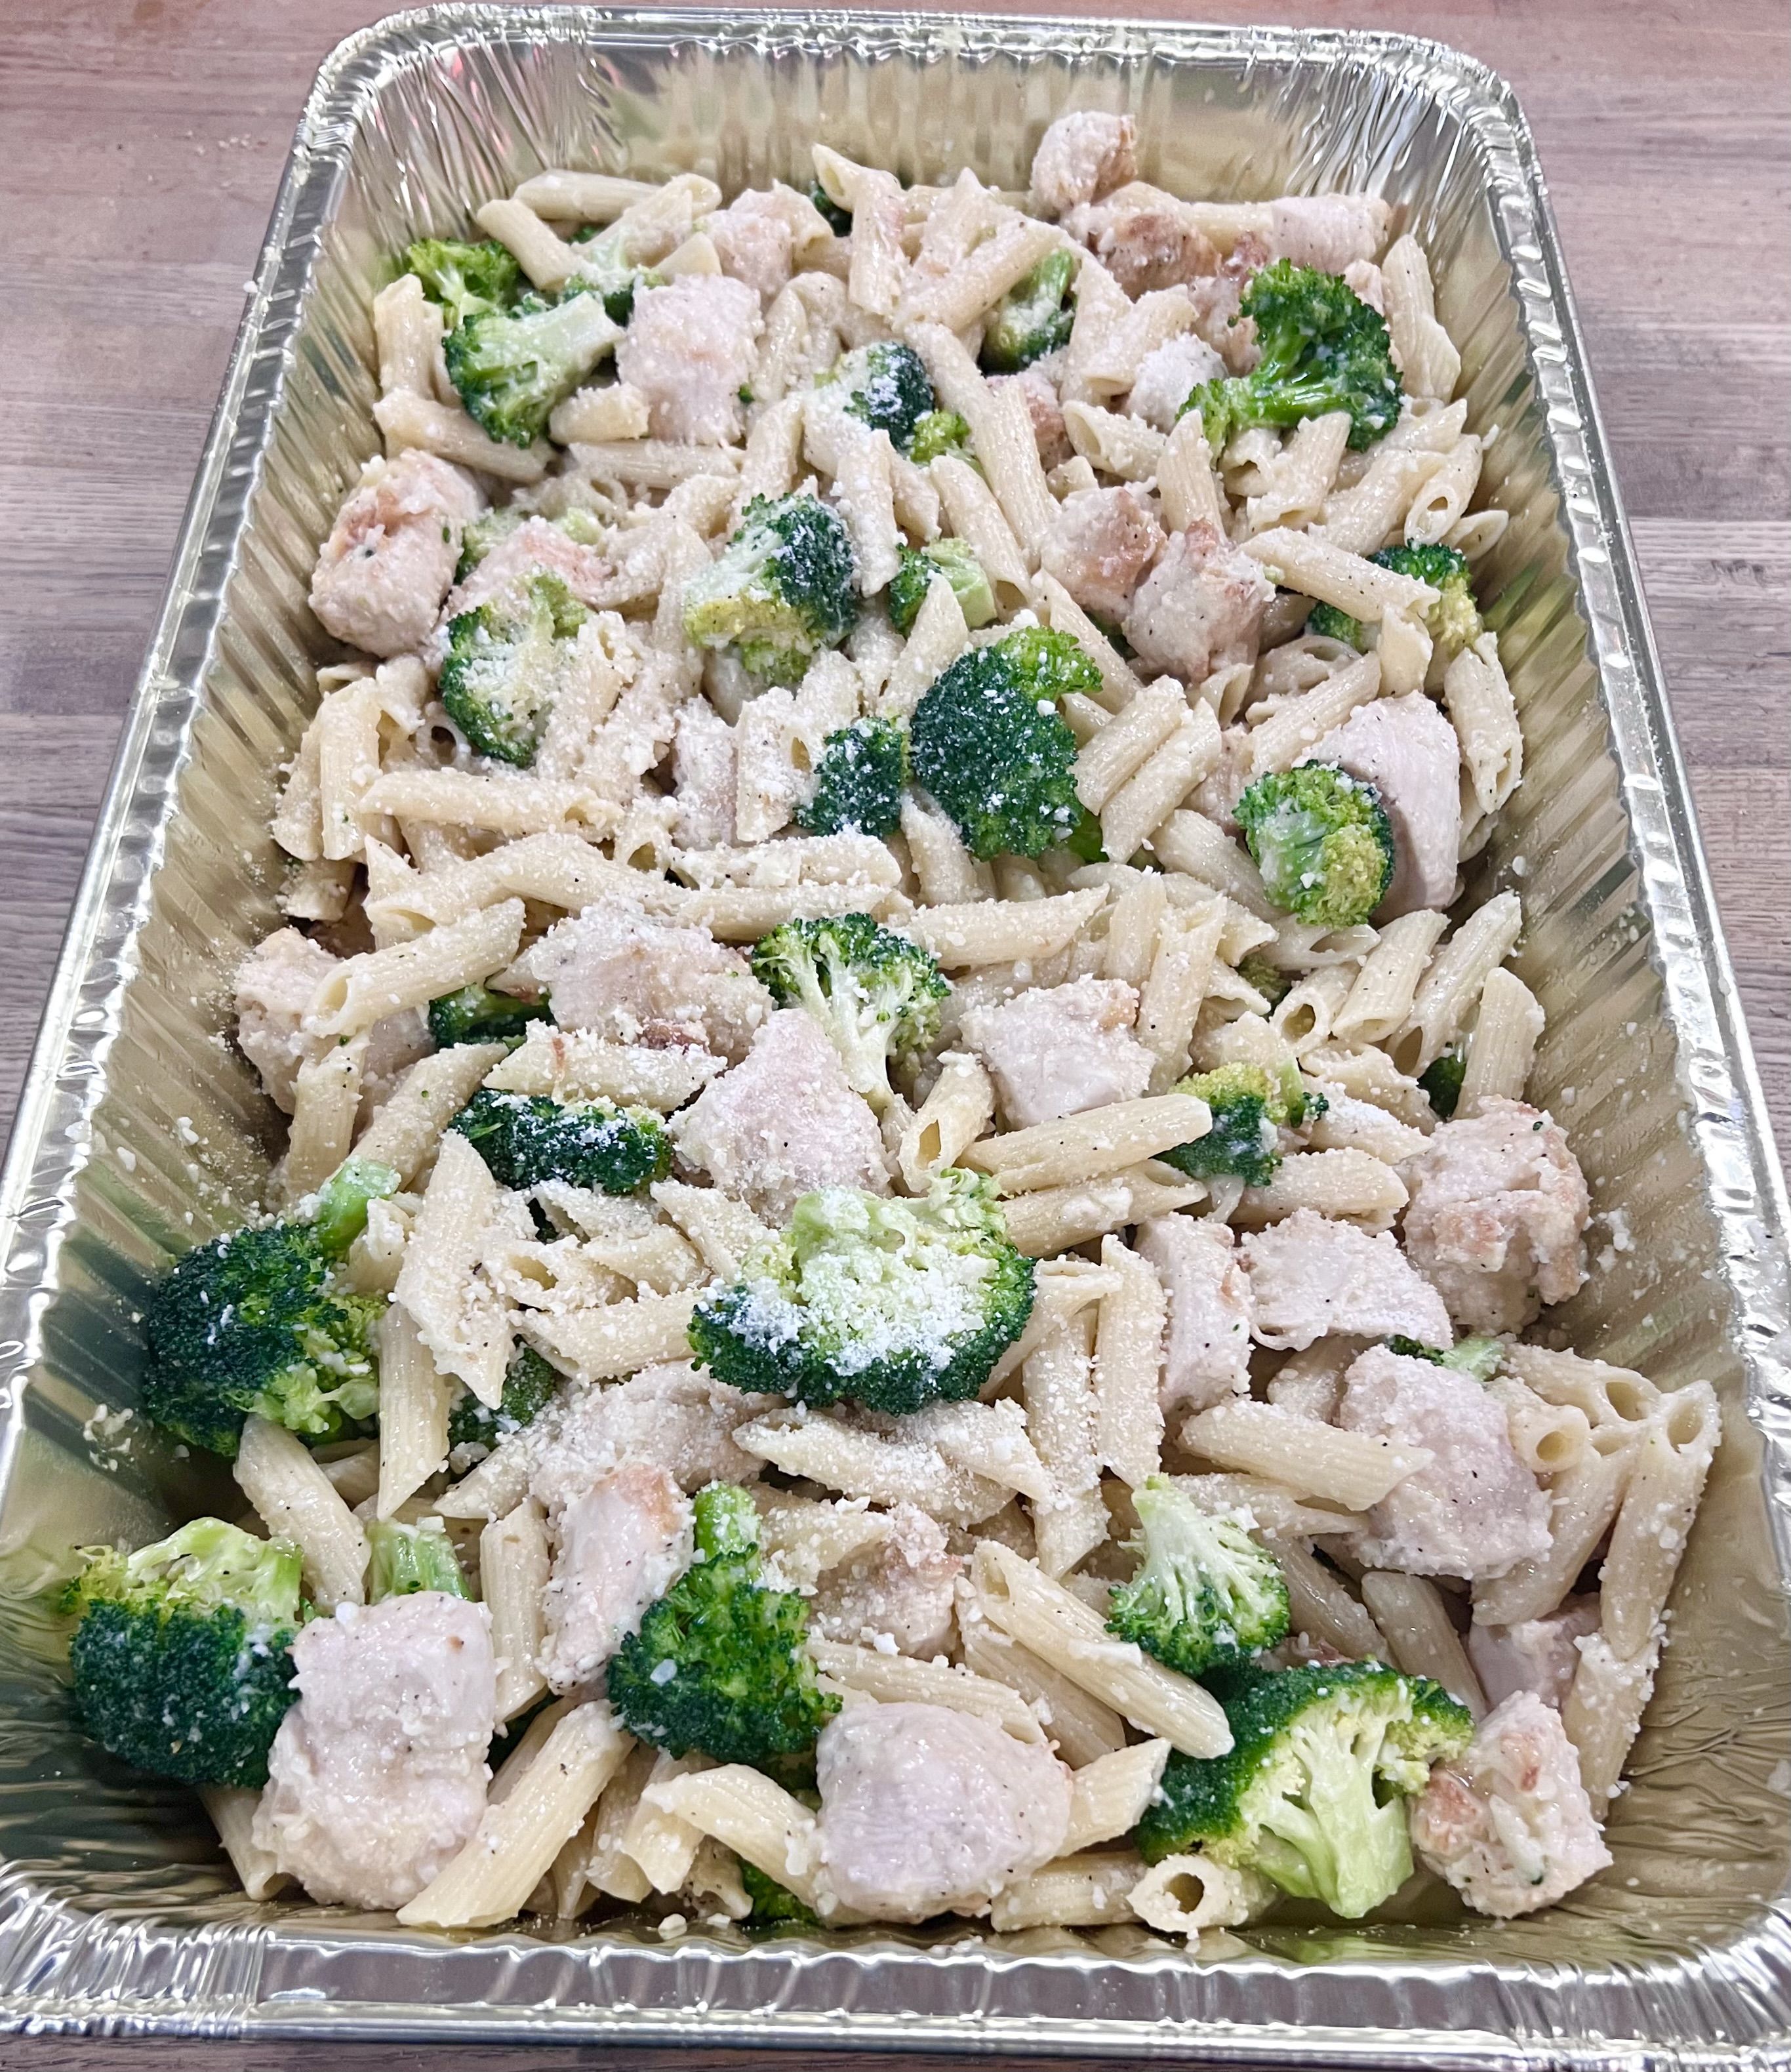 Pasta con Broccoli & Chicken - Large